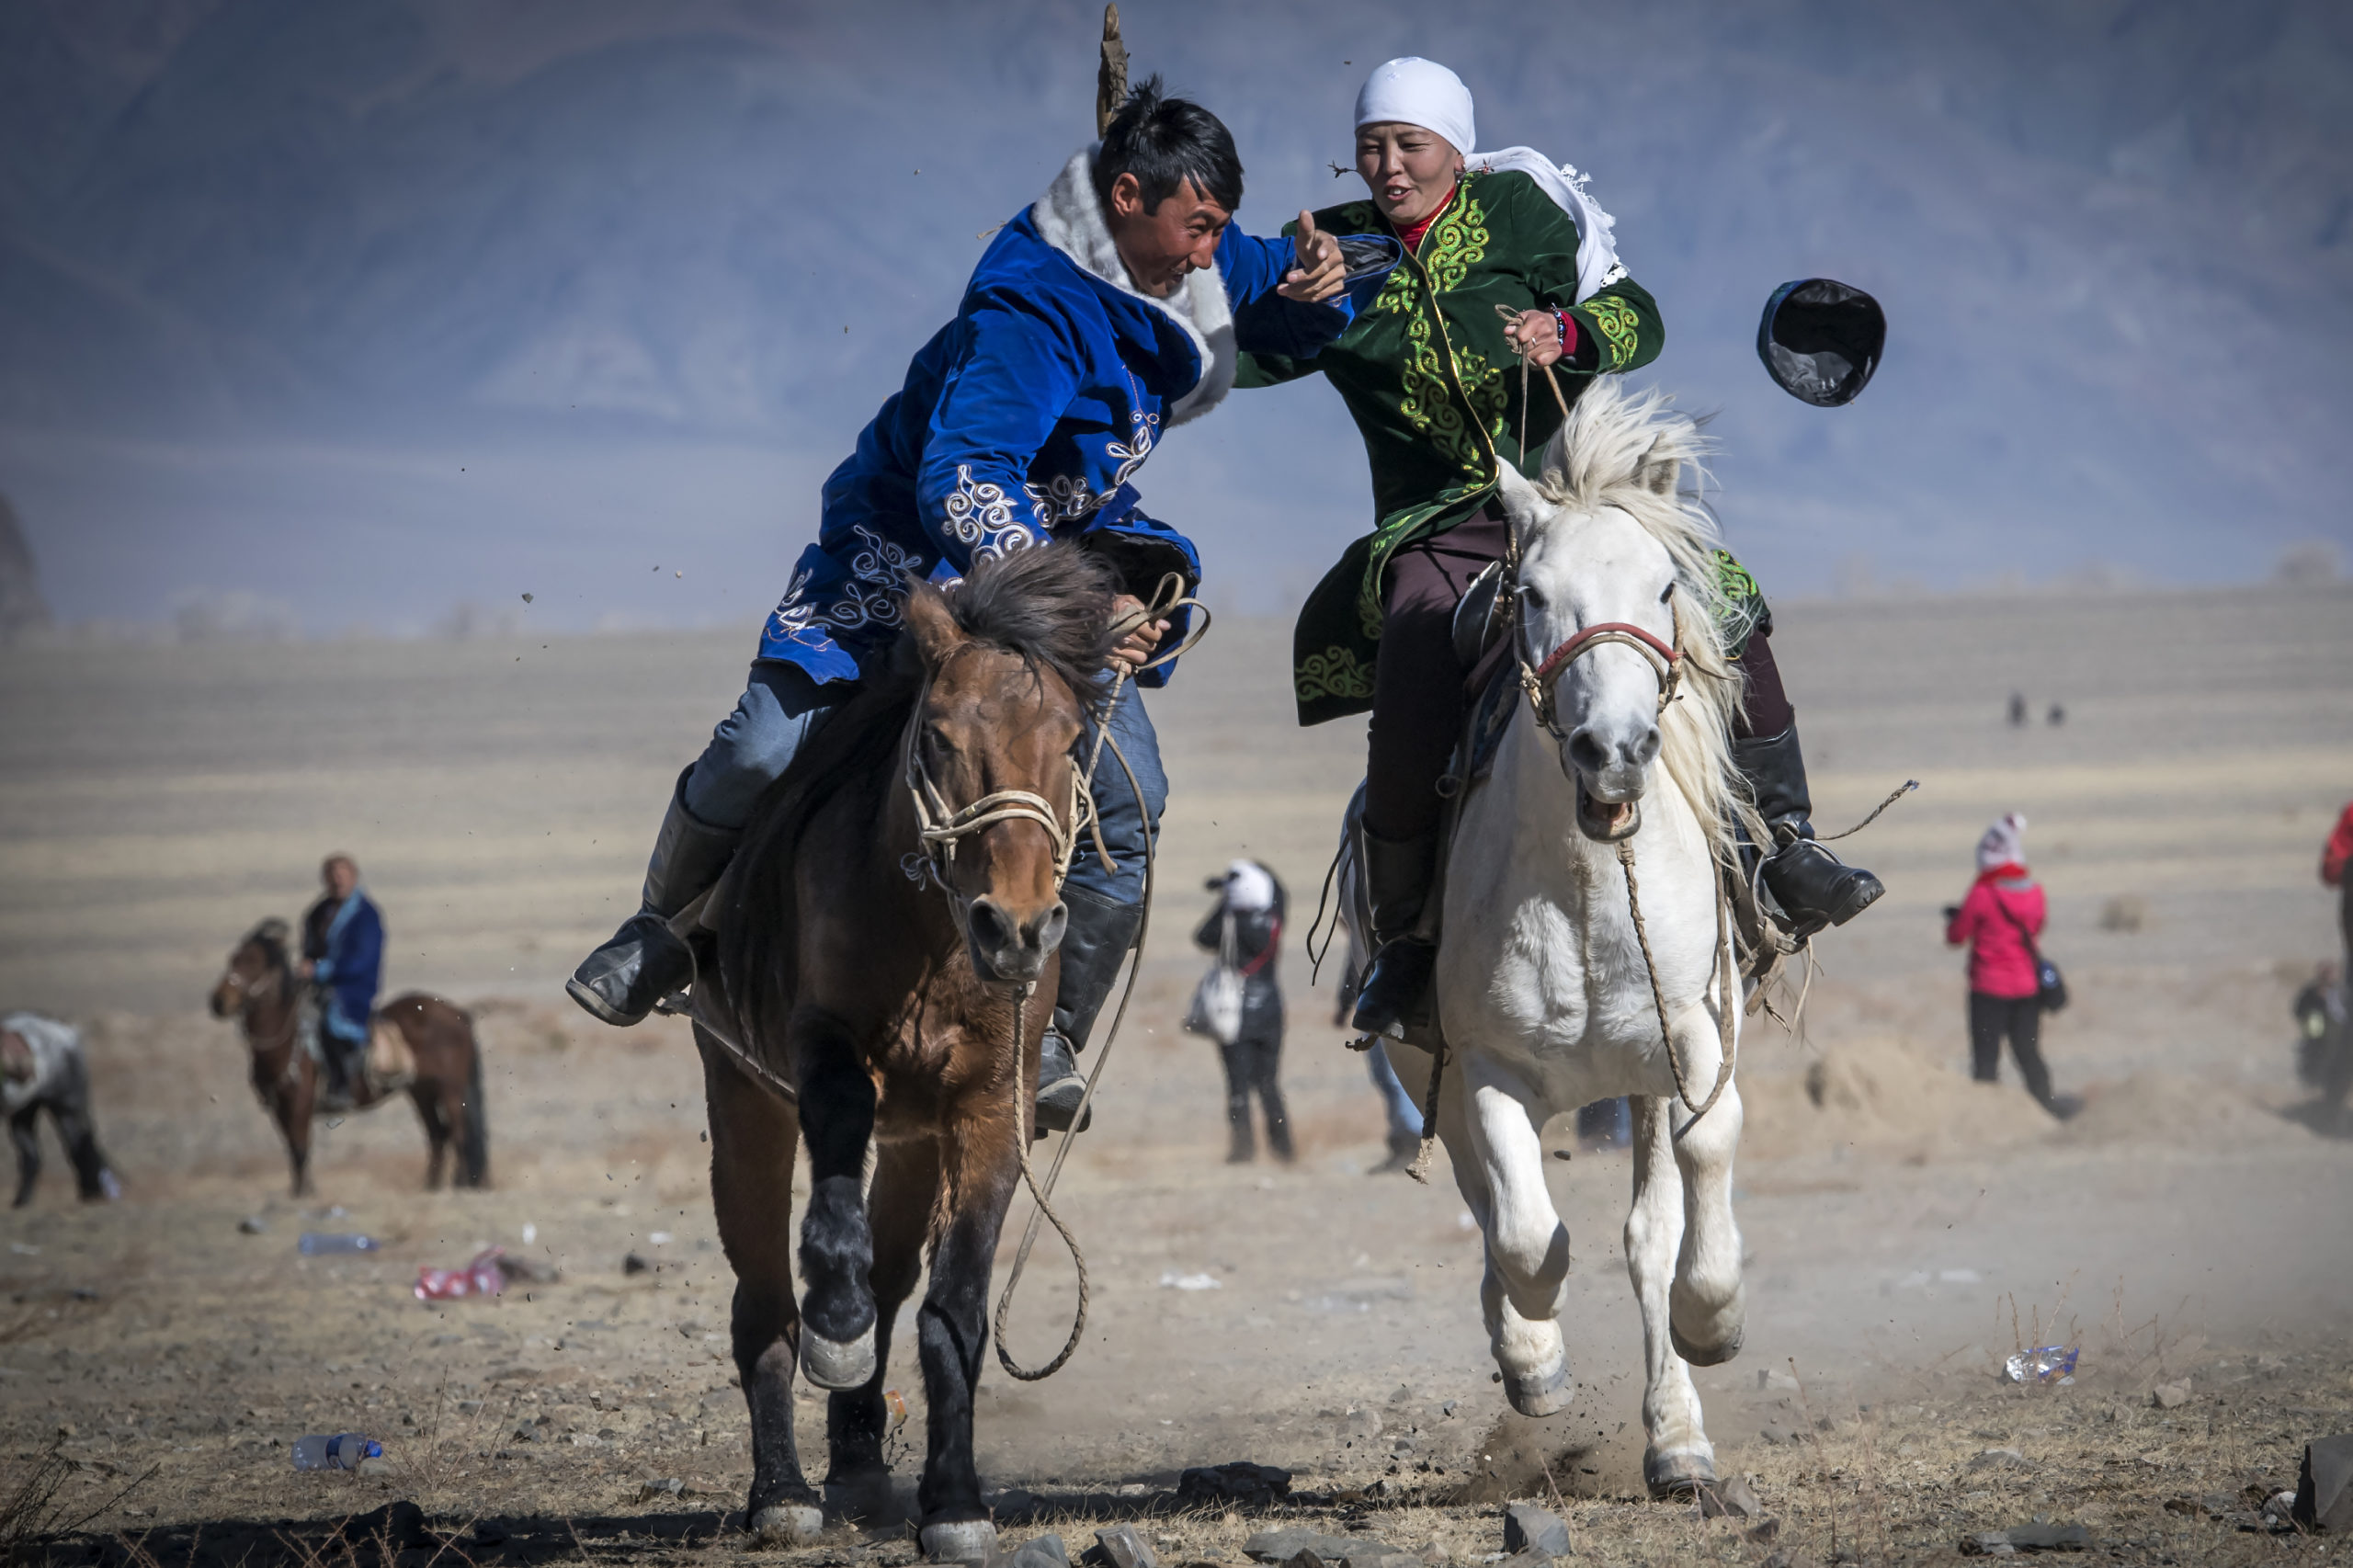 6.7.10.2018. Olgyi; Festival des aigles en Mongolie. Des couples se livrent  la cavalcade de couple. La femme cravachant le mari pour faire fuir son cheval. Ce jeux est appele Kyz KuarPhoto Jean-Guy Python